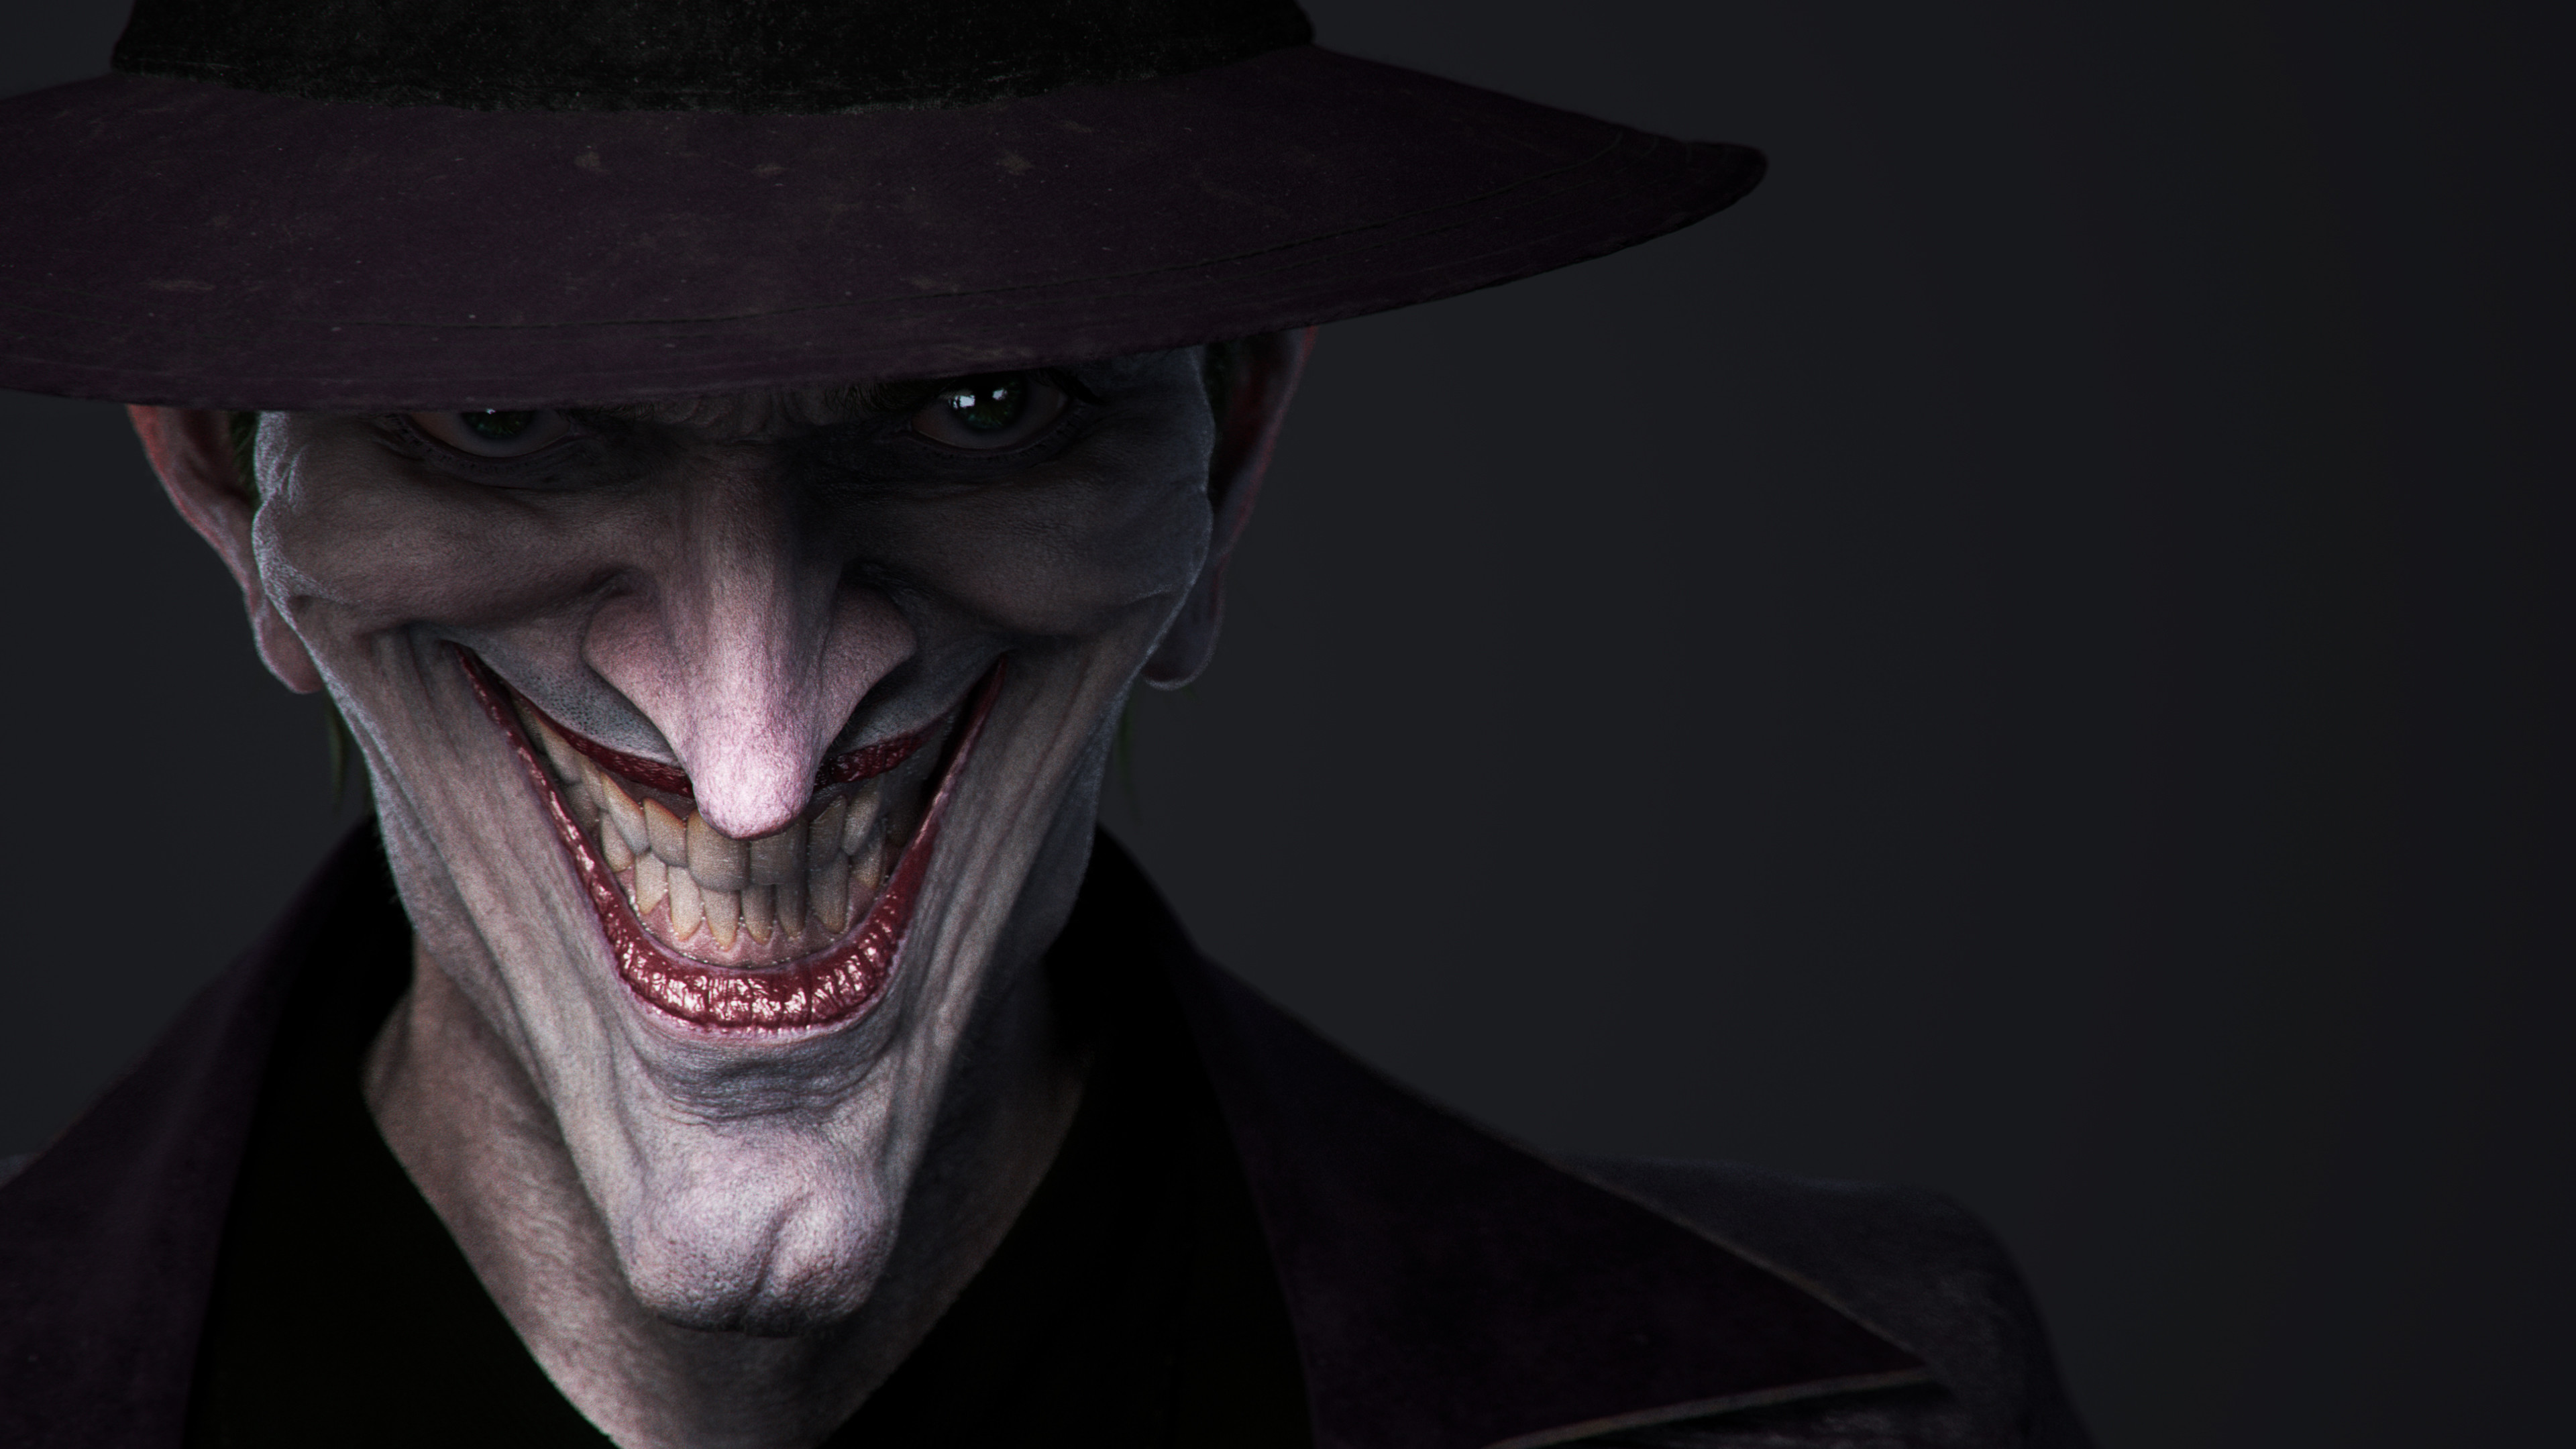 3840x2160 Joker - The Killing Joke (CG interpretation) by Duc (Phil) Nguyen